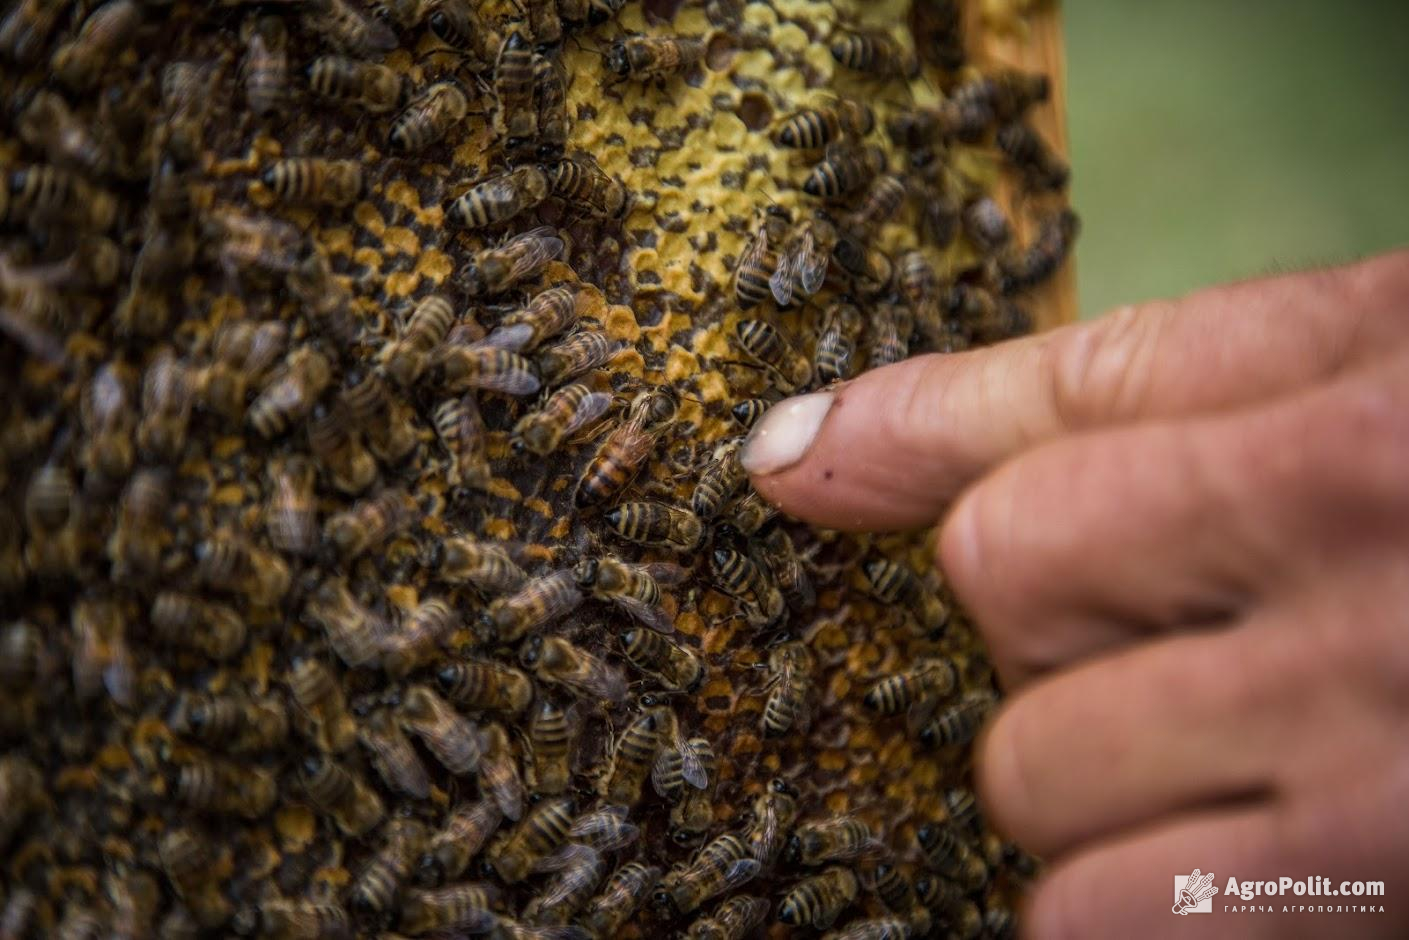 Мінагрополітики озвучило заходи для попередження отруєння бджіл